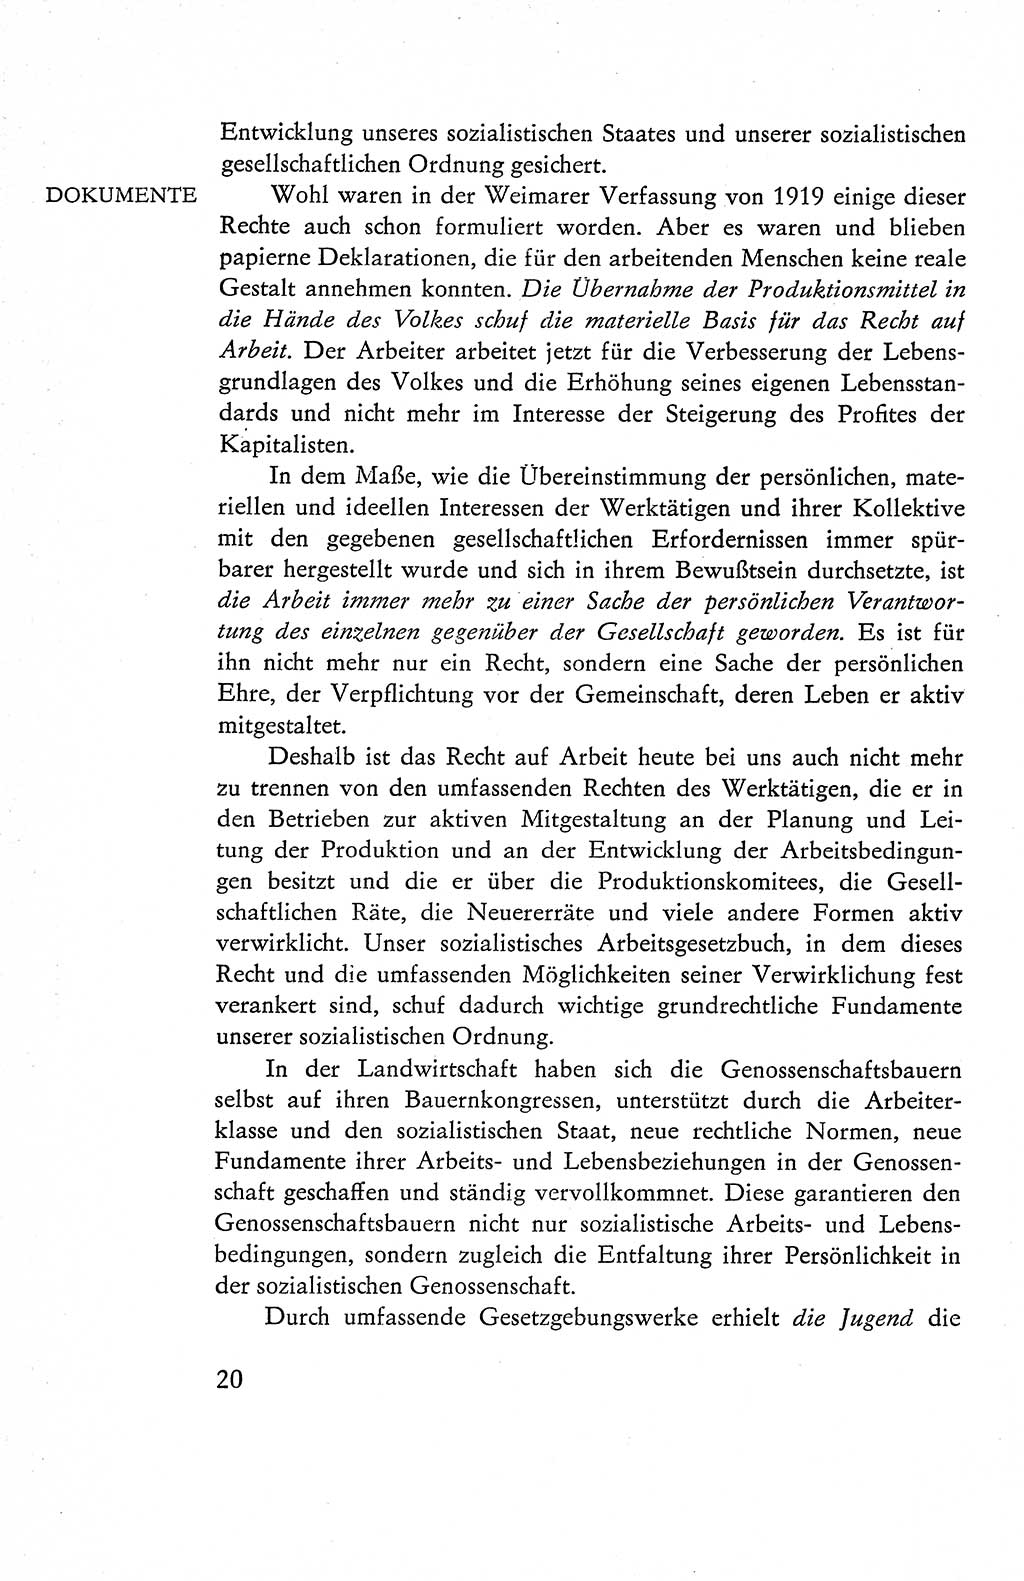 Verfassung der Deutschen Demokratischen Republik (DDR), Dokumente, Kommentar 1969, Band 1, Seite 20 (Verf. DDR Dok. Komm. 1969, Bd. 1, S. 20)